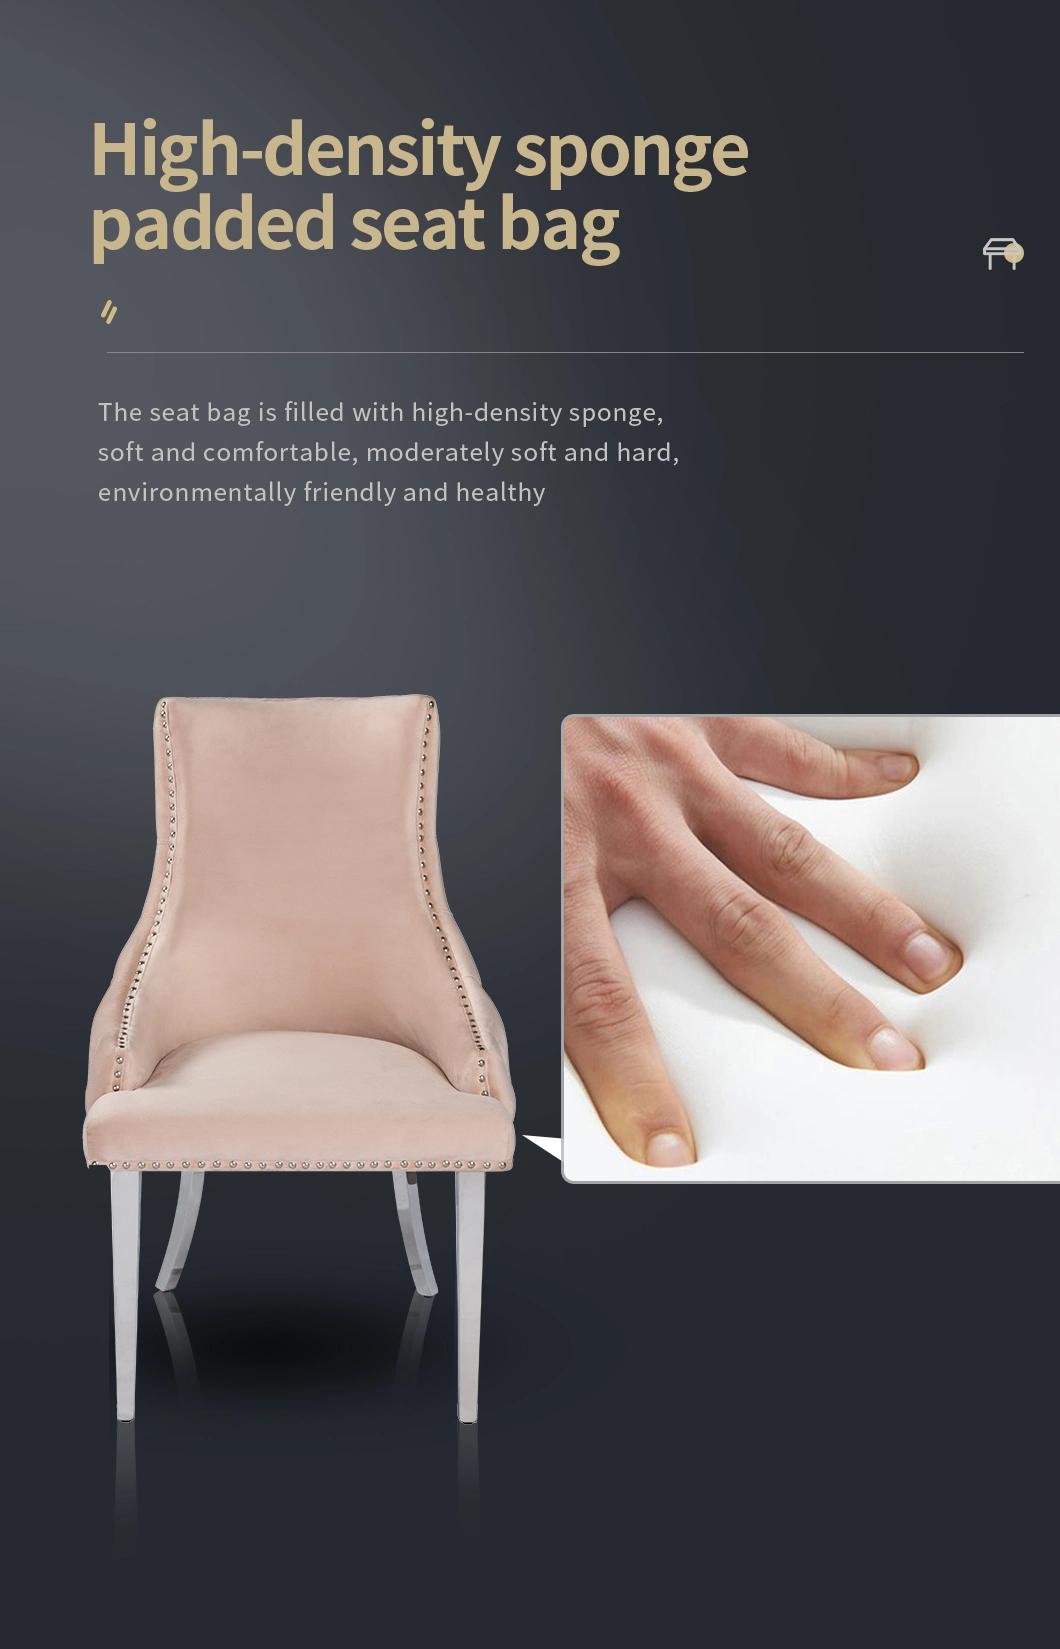 Wholesale Modern Velvet Fabric Upholstered Metal Gold Leg Dining Chairs